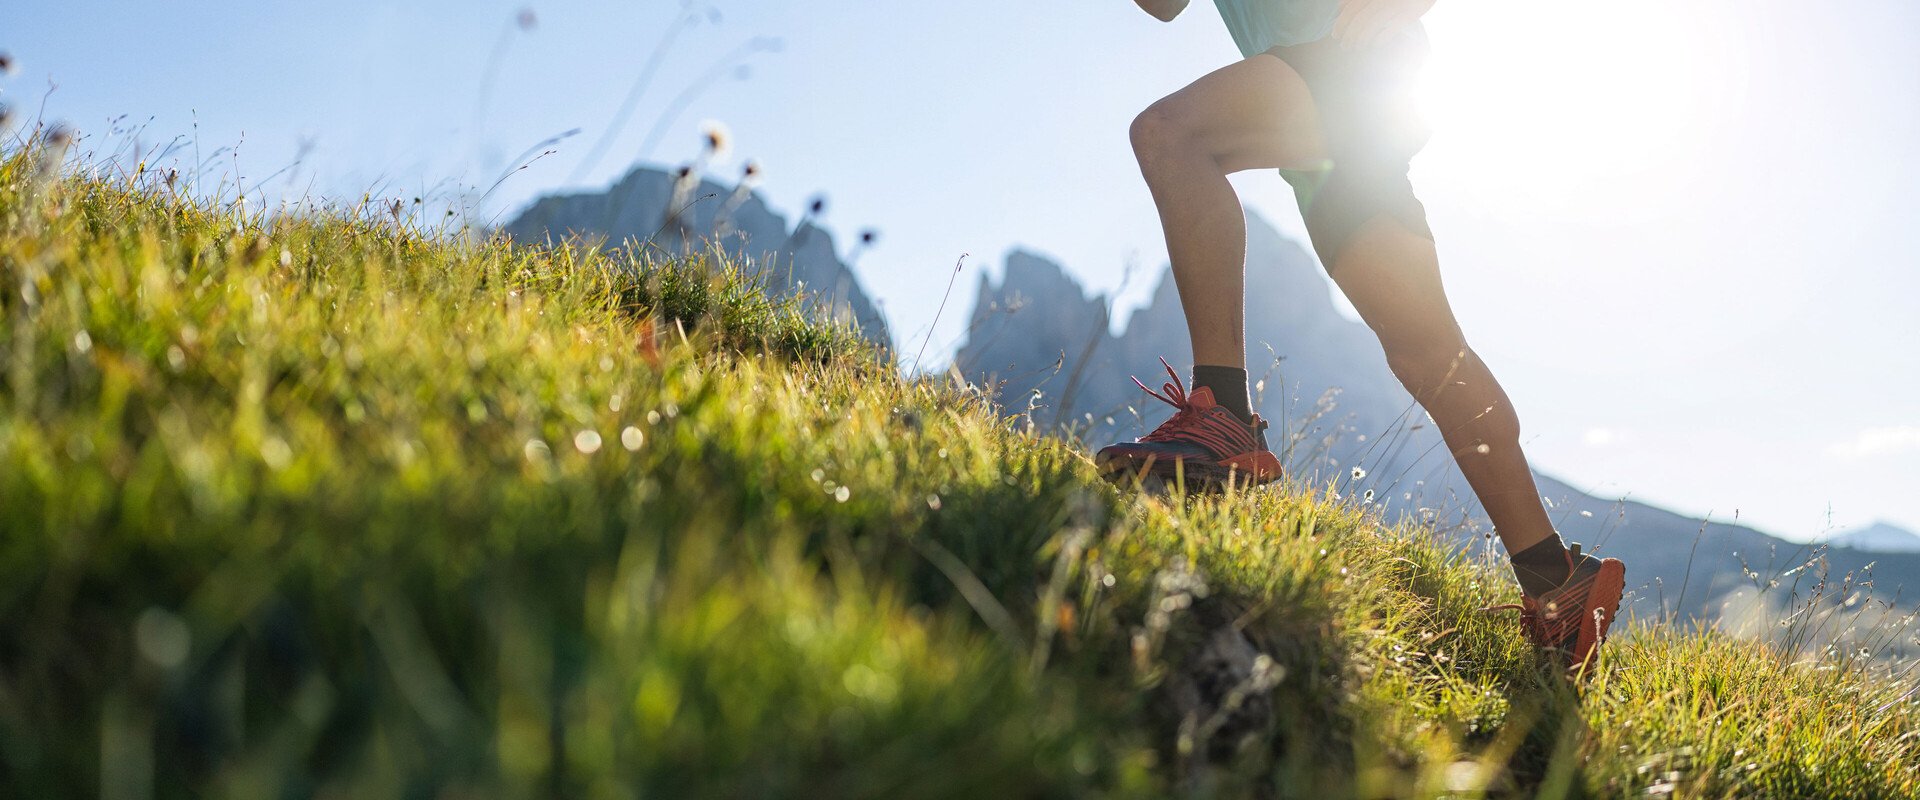 Die Beine eines Trailrunners auf einem Bergrücken. Das Bild leitet die Produktkategorie Sixtus Sport ein.